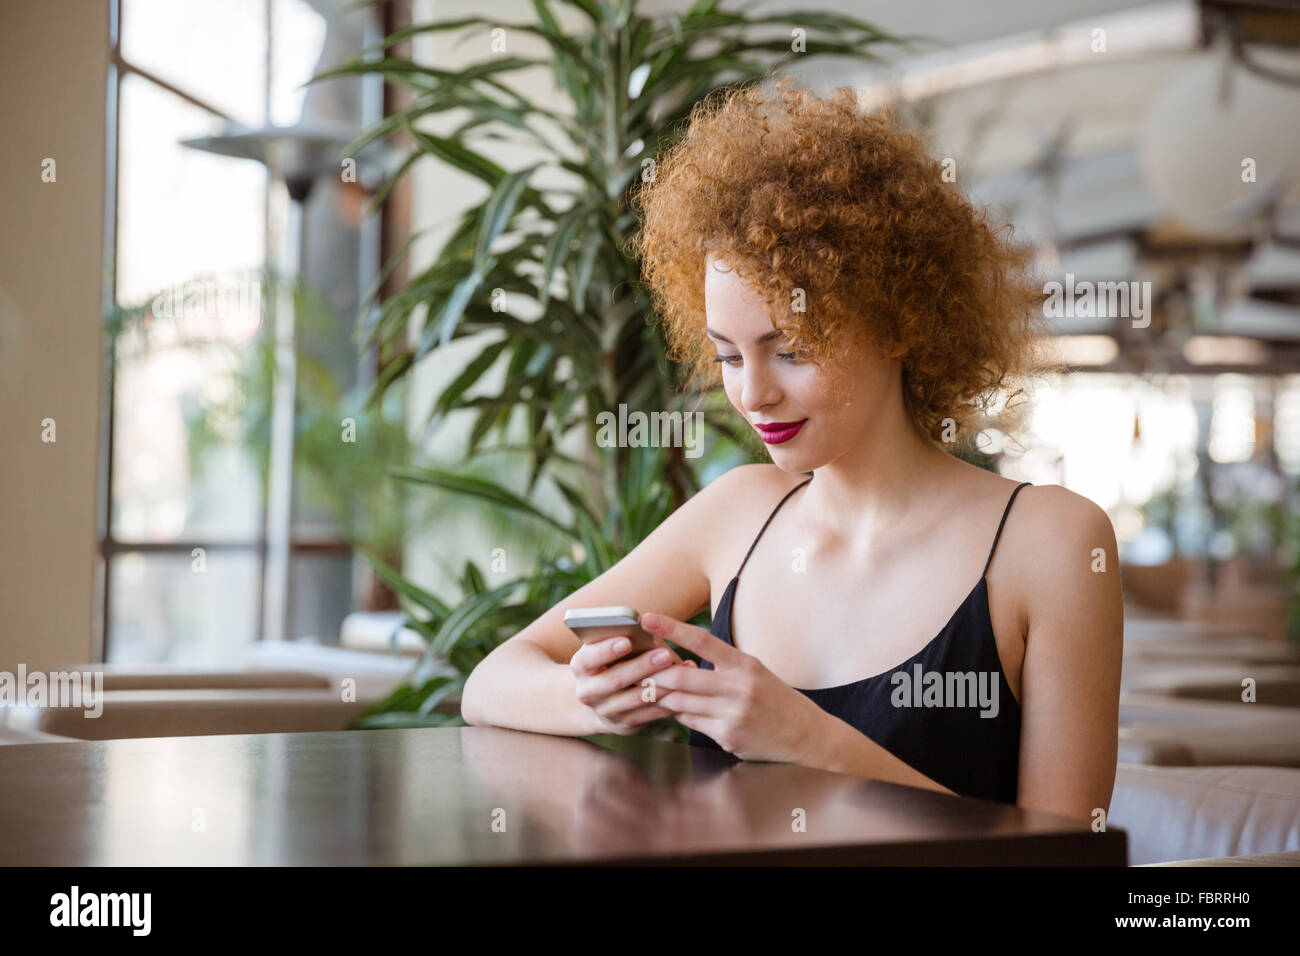 Femme rousse avec les cheveux bouclés à la table et l'utilisation de smartphone dans restaurant Banque D'Images